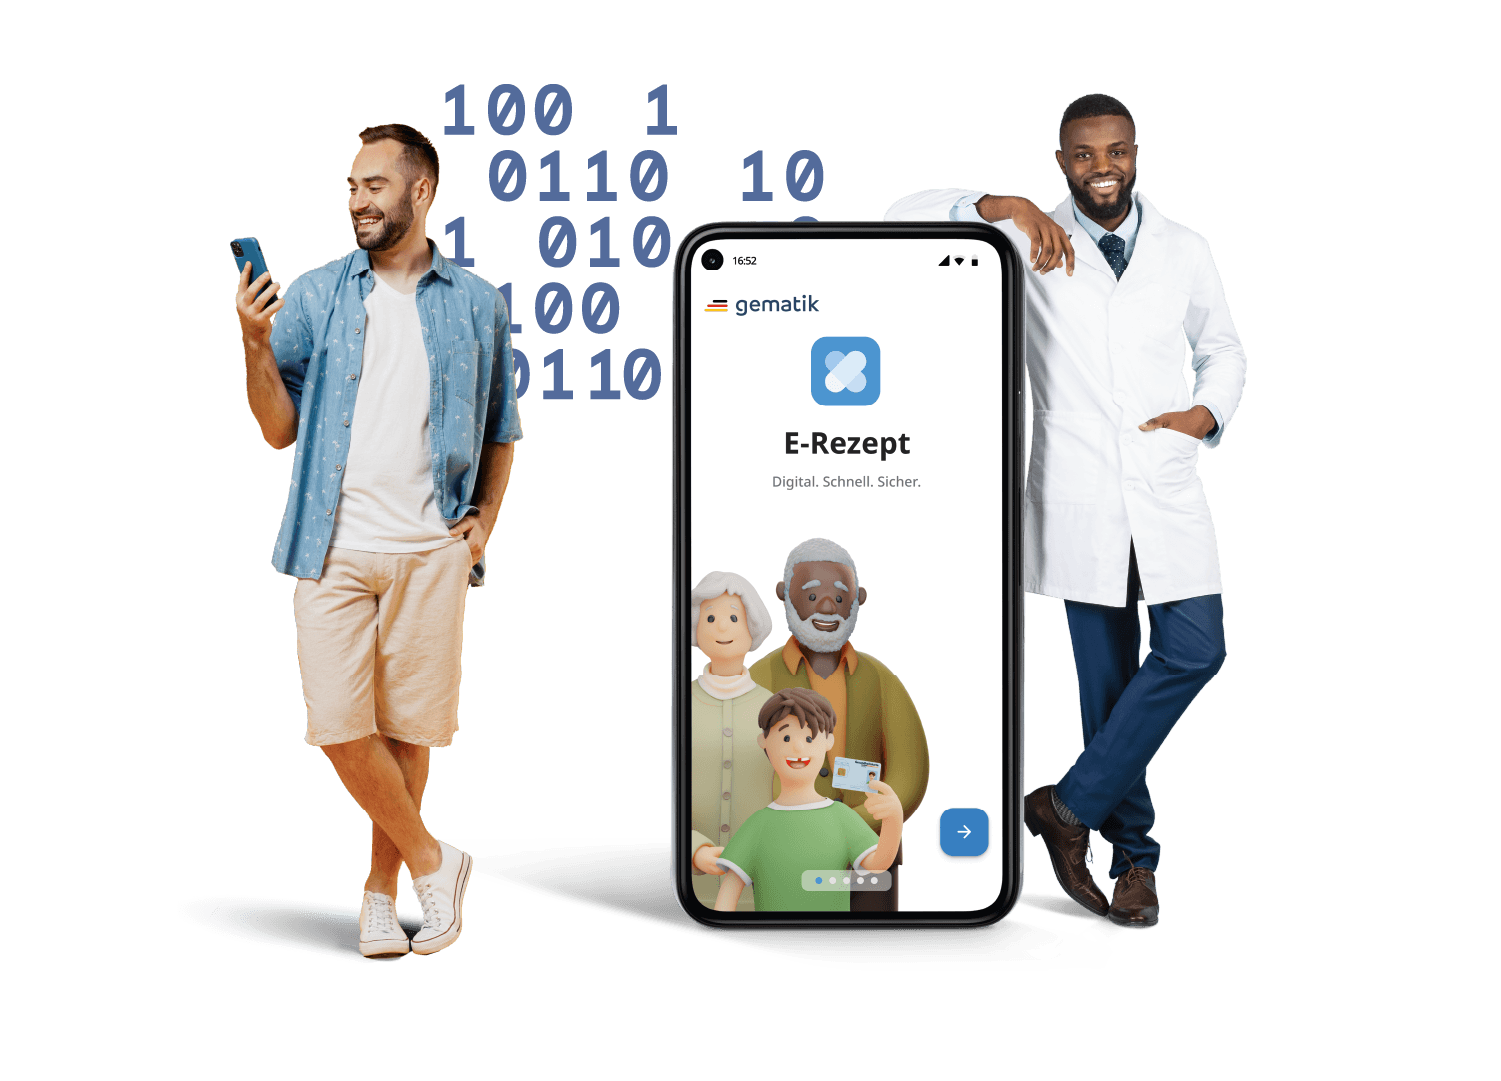 Ein Herr und ein Arzt die neben einem mannshohen Smartphone stehen, auf dem die E-Rezept-App abgebildet ist